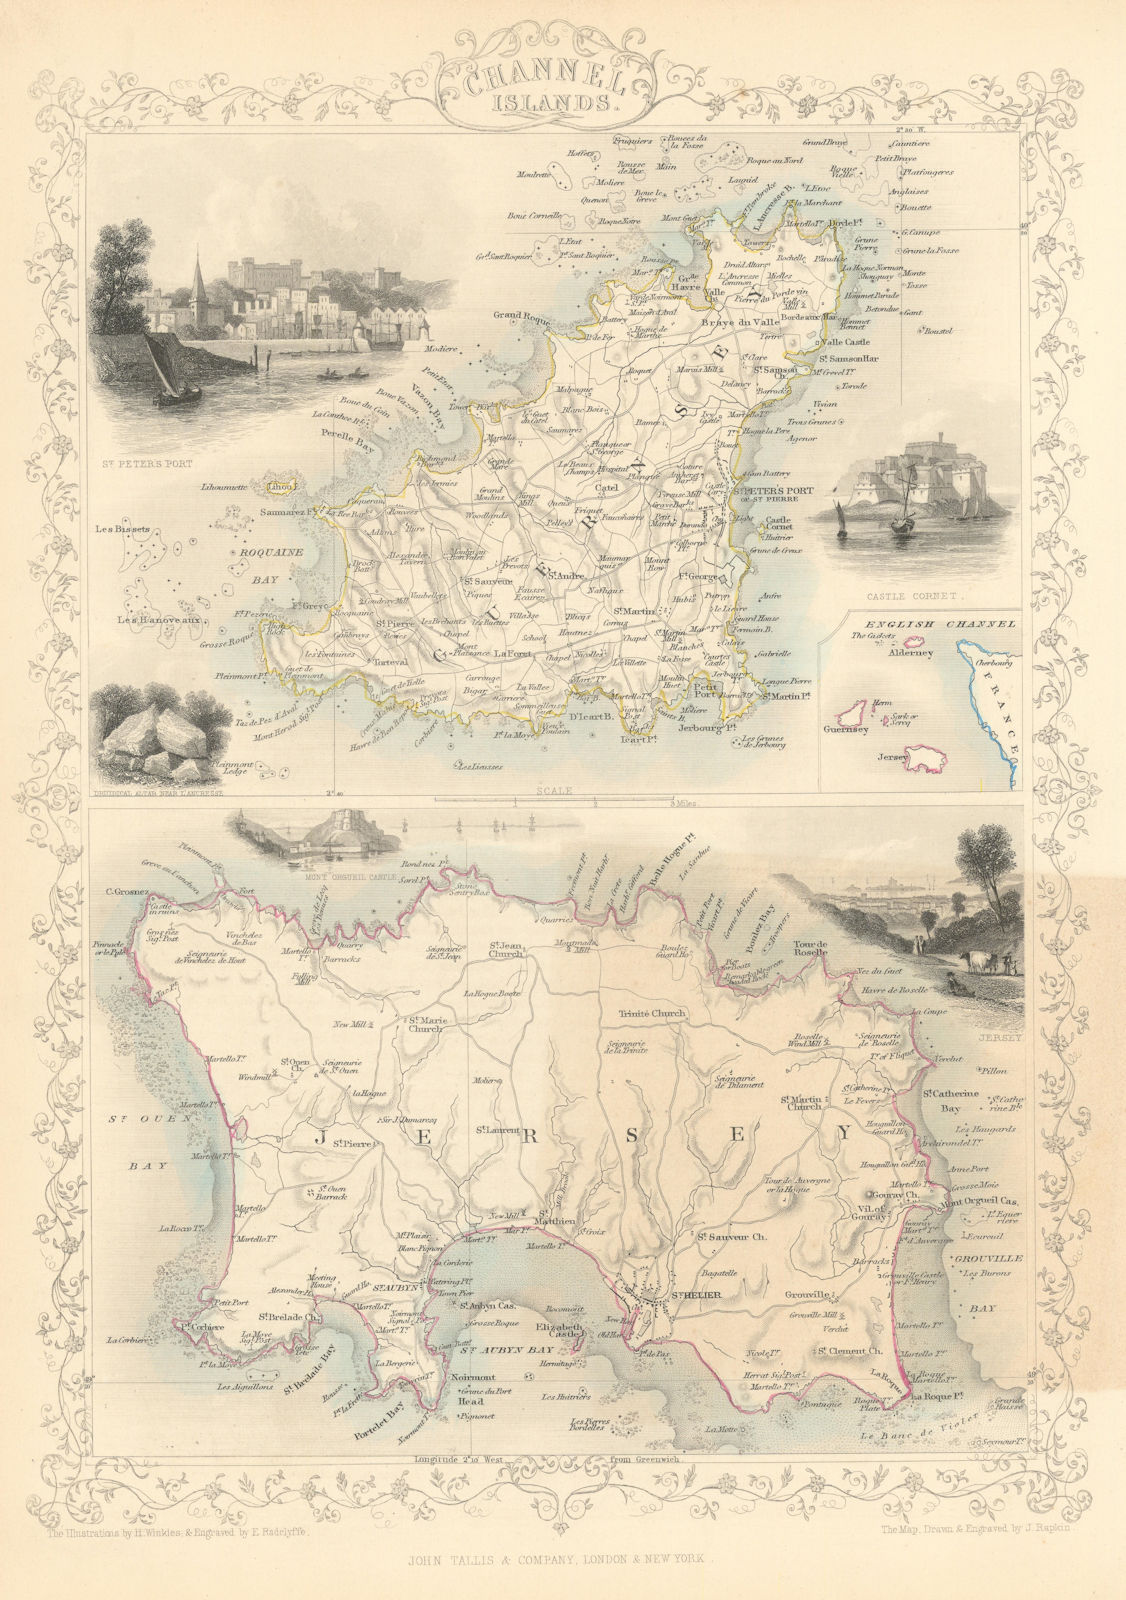 CHANNEL ISLANDS. St Peter Port view. Jersey & Guernsey. TALLIS & RAPKIN 1851 map